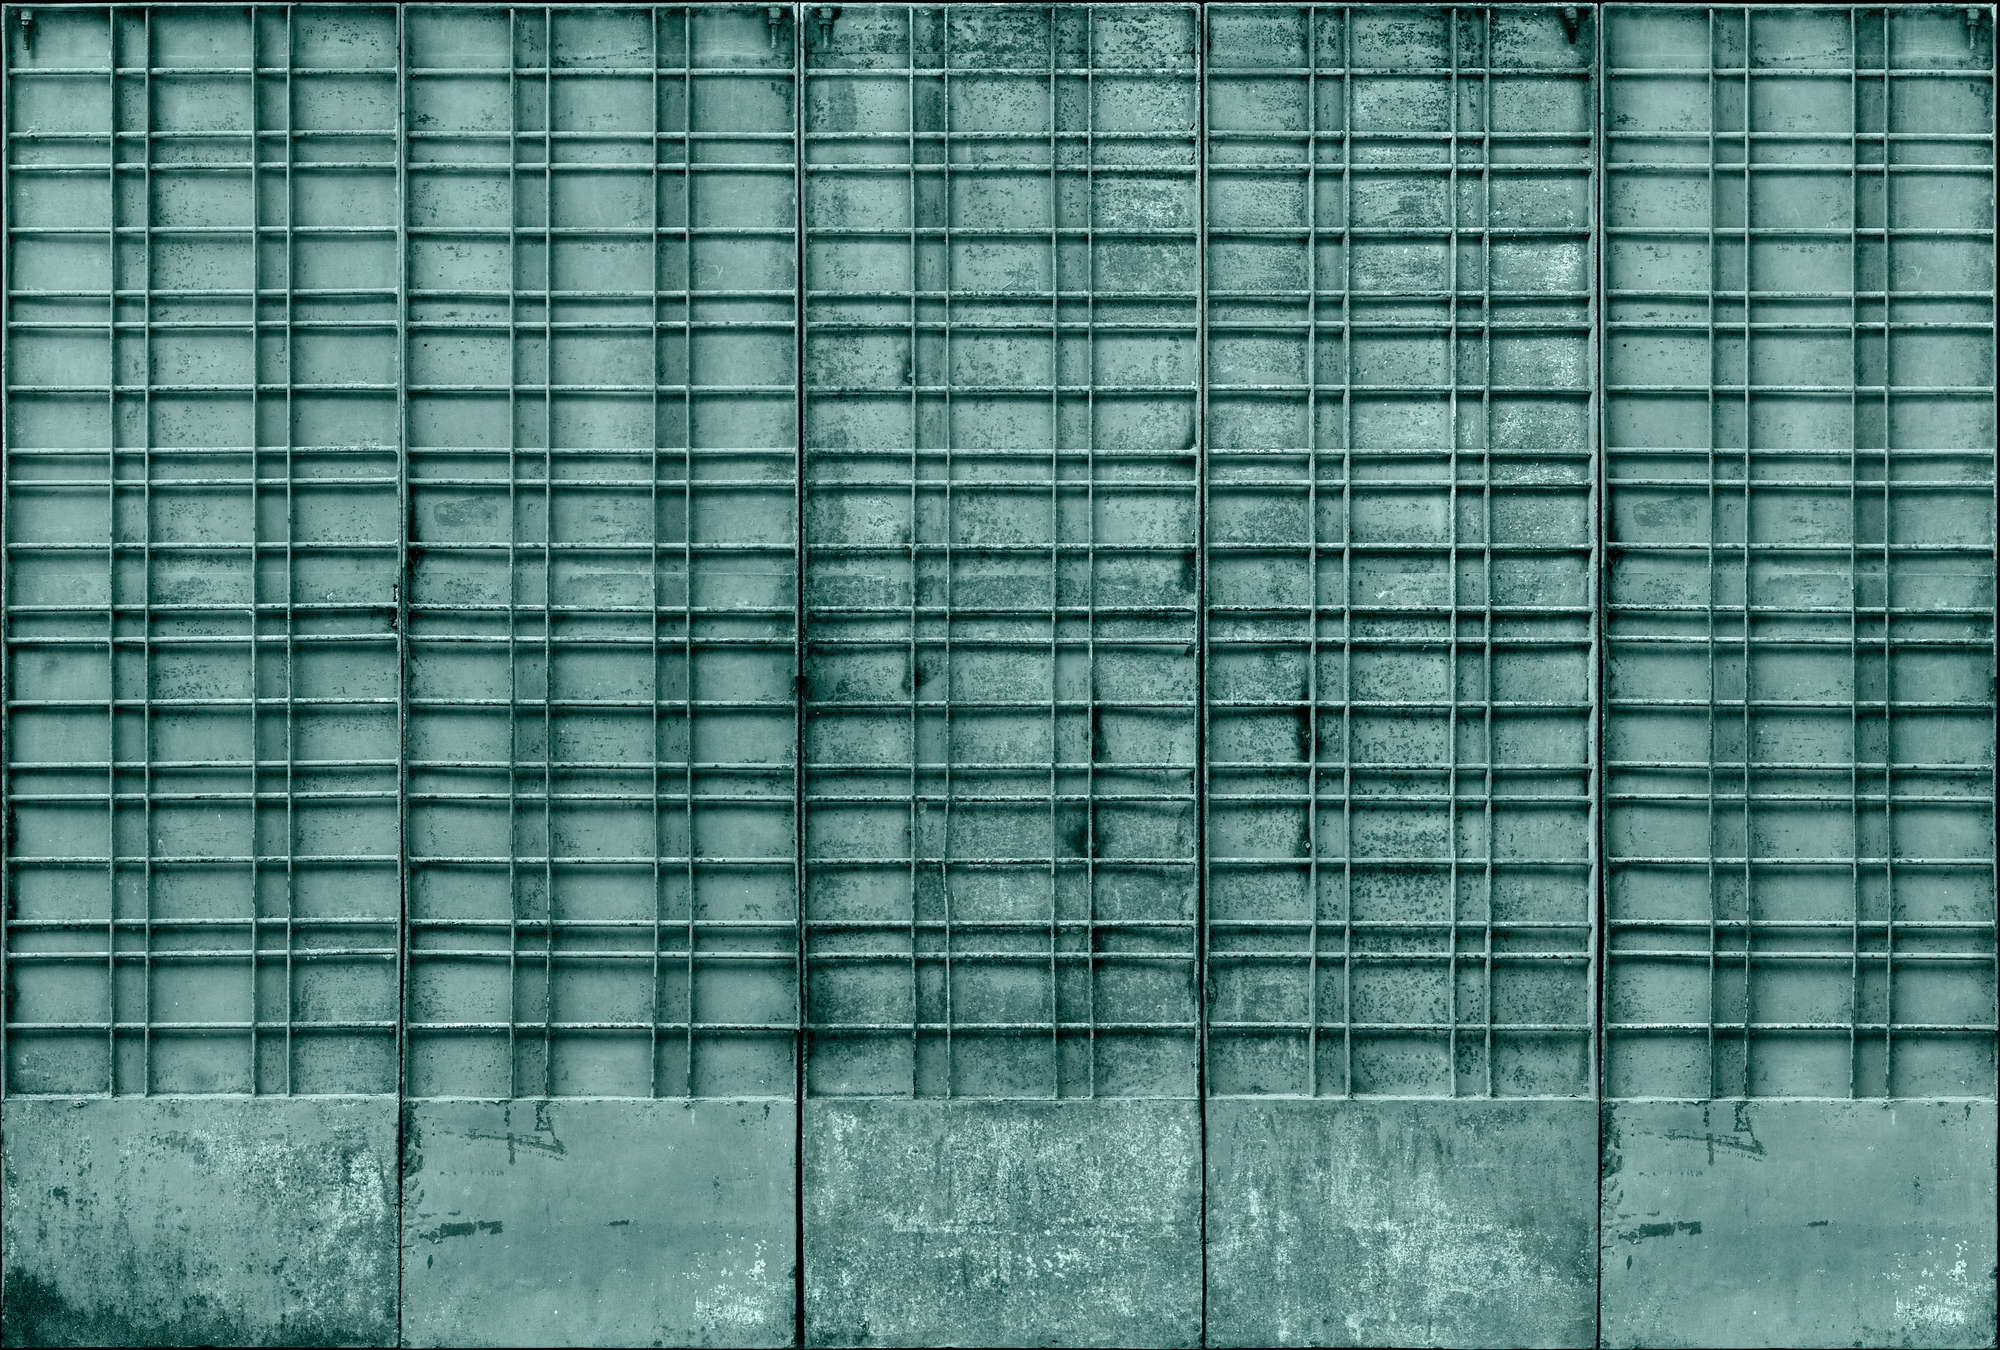             Digital behang »bangalore« - Close-up van een petrolkleurig metalen hek met rechthoekige decoraties - mat, glad vliesmateriaal
        